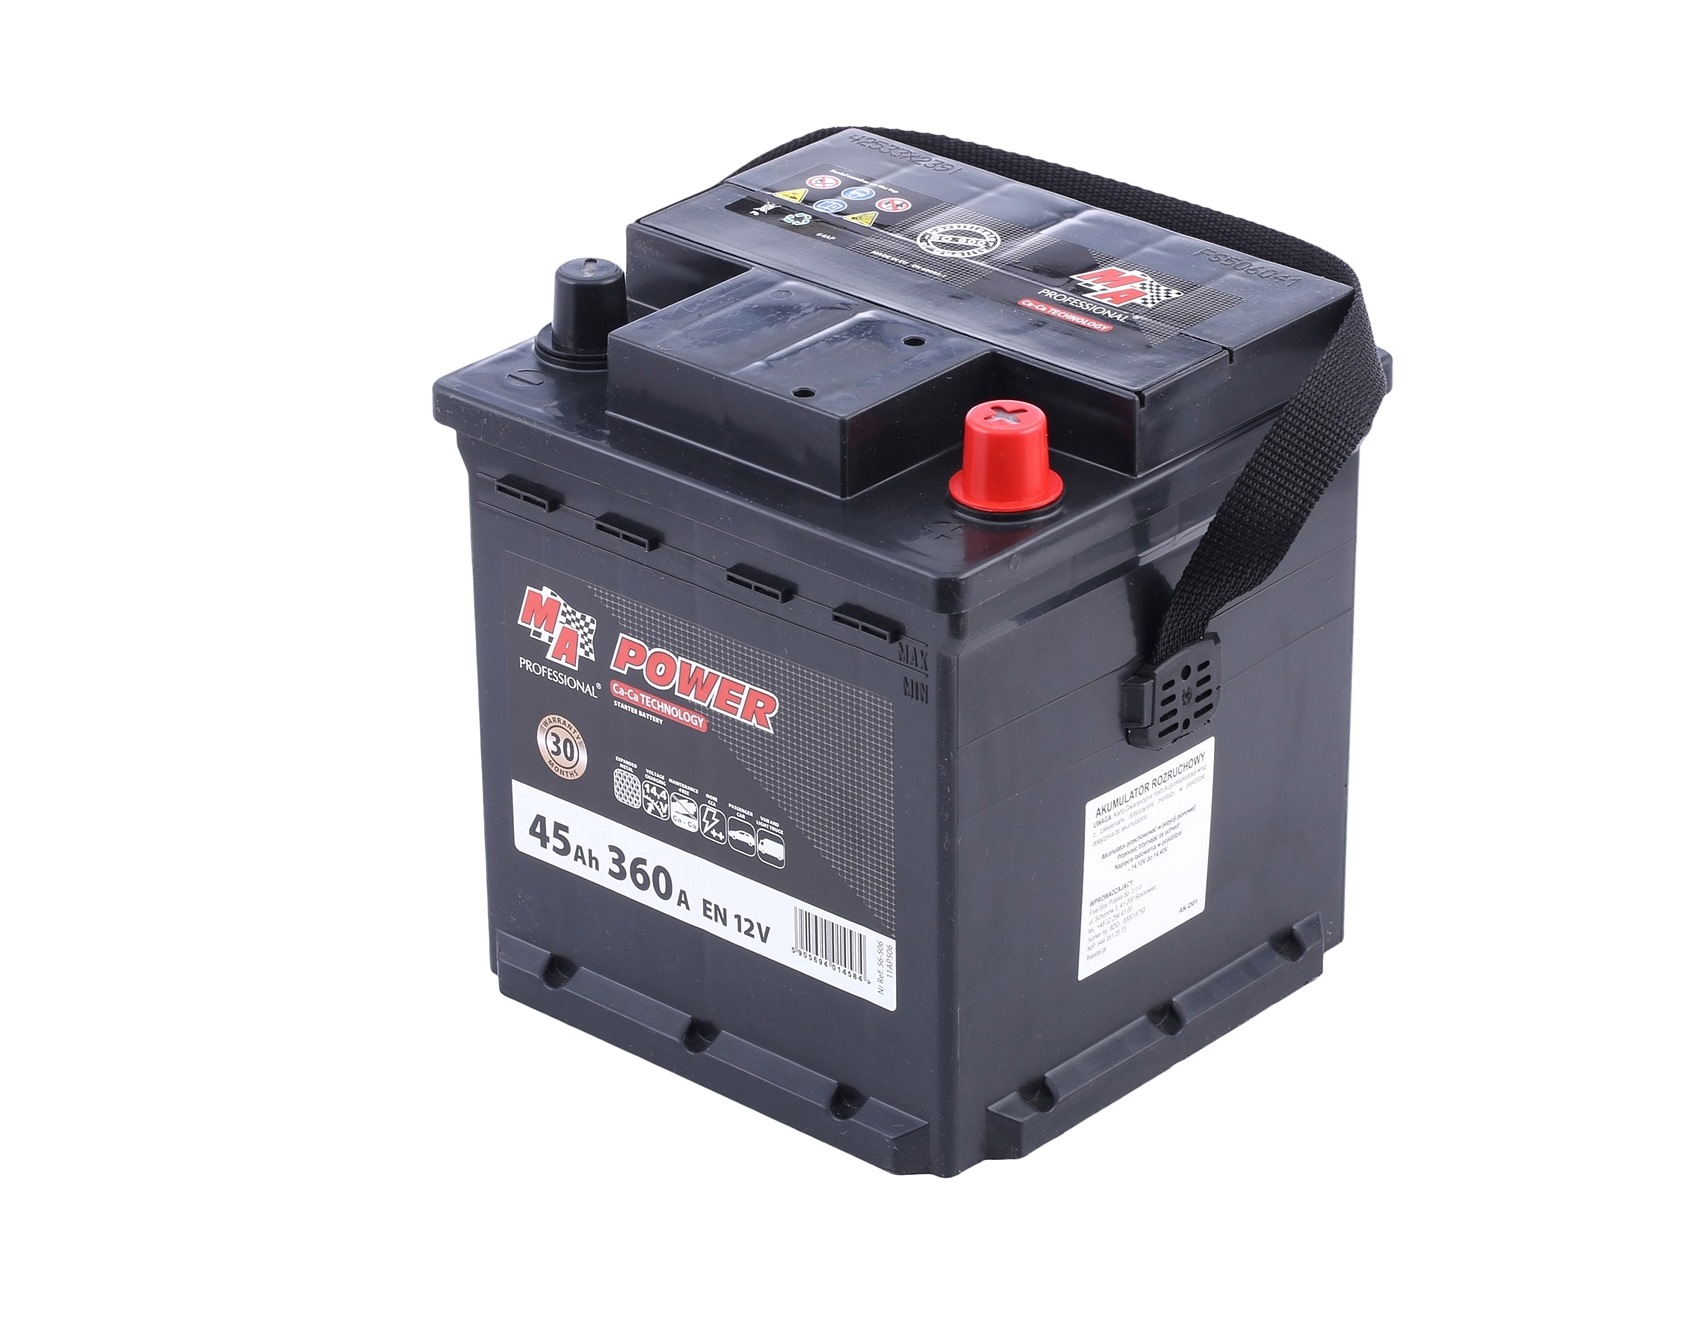 56-506 EMPEX S4 000 Batterie 12V 45Ah 360A B13 L0 Bleiakkumulator